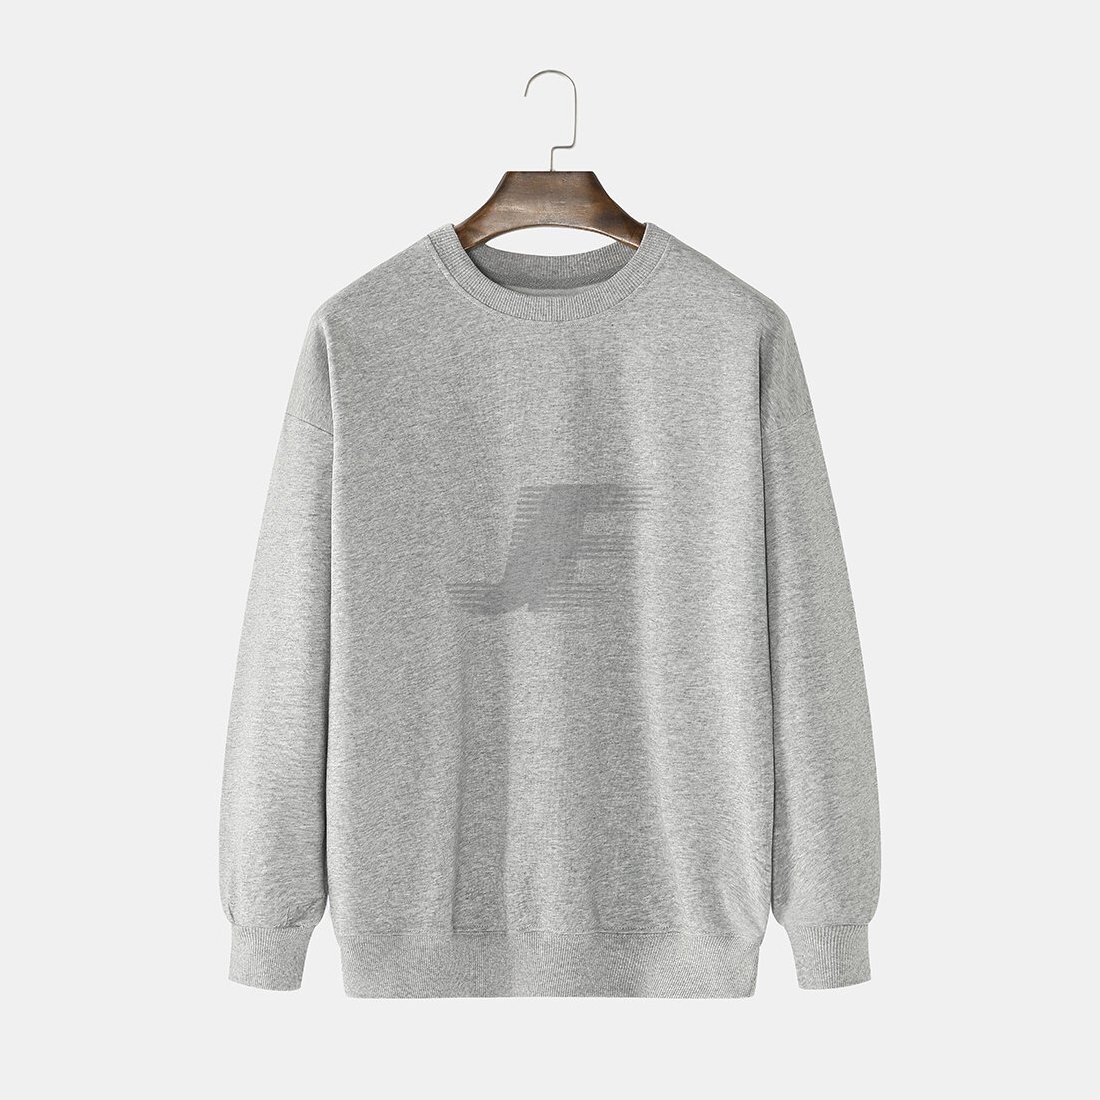 Blank Heather Grey Cotton Fleece Sweatshirt